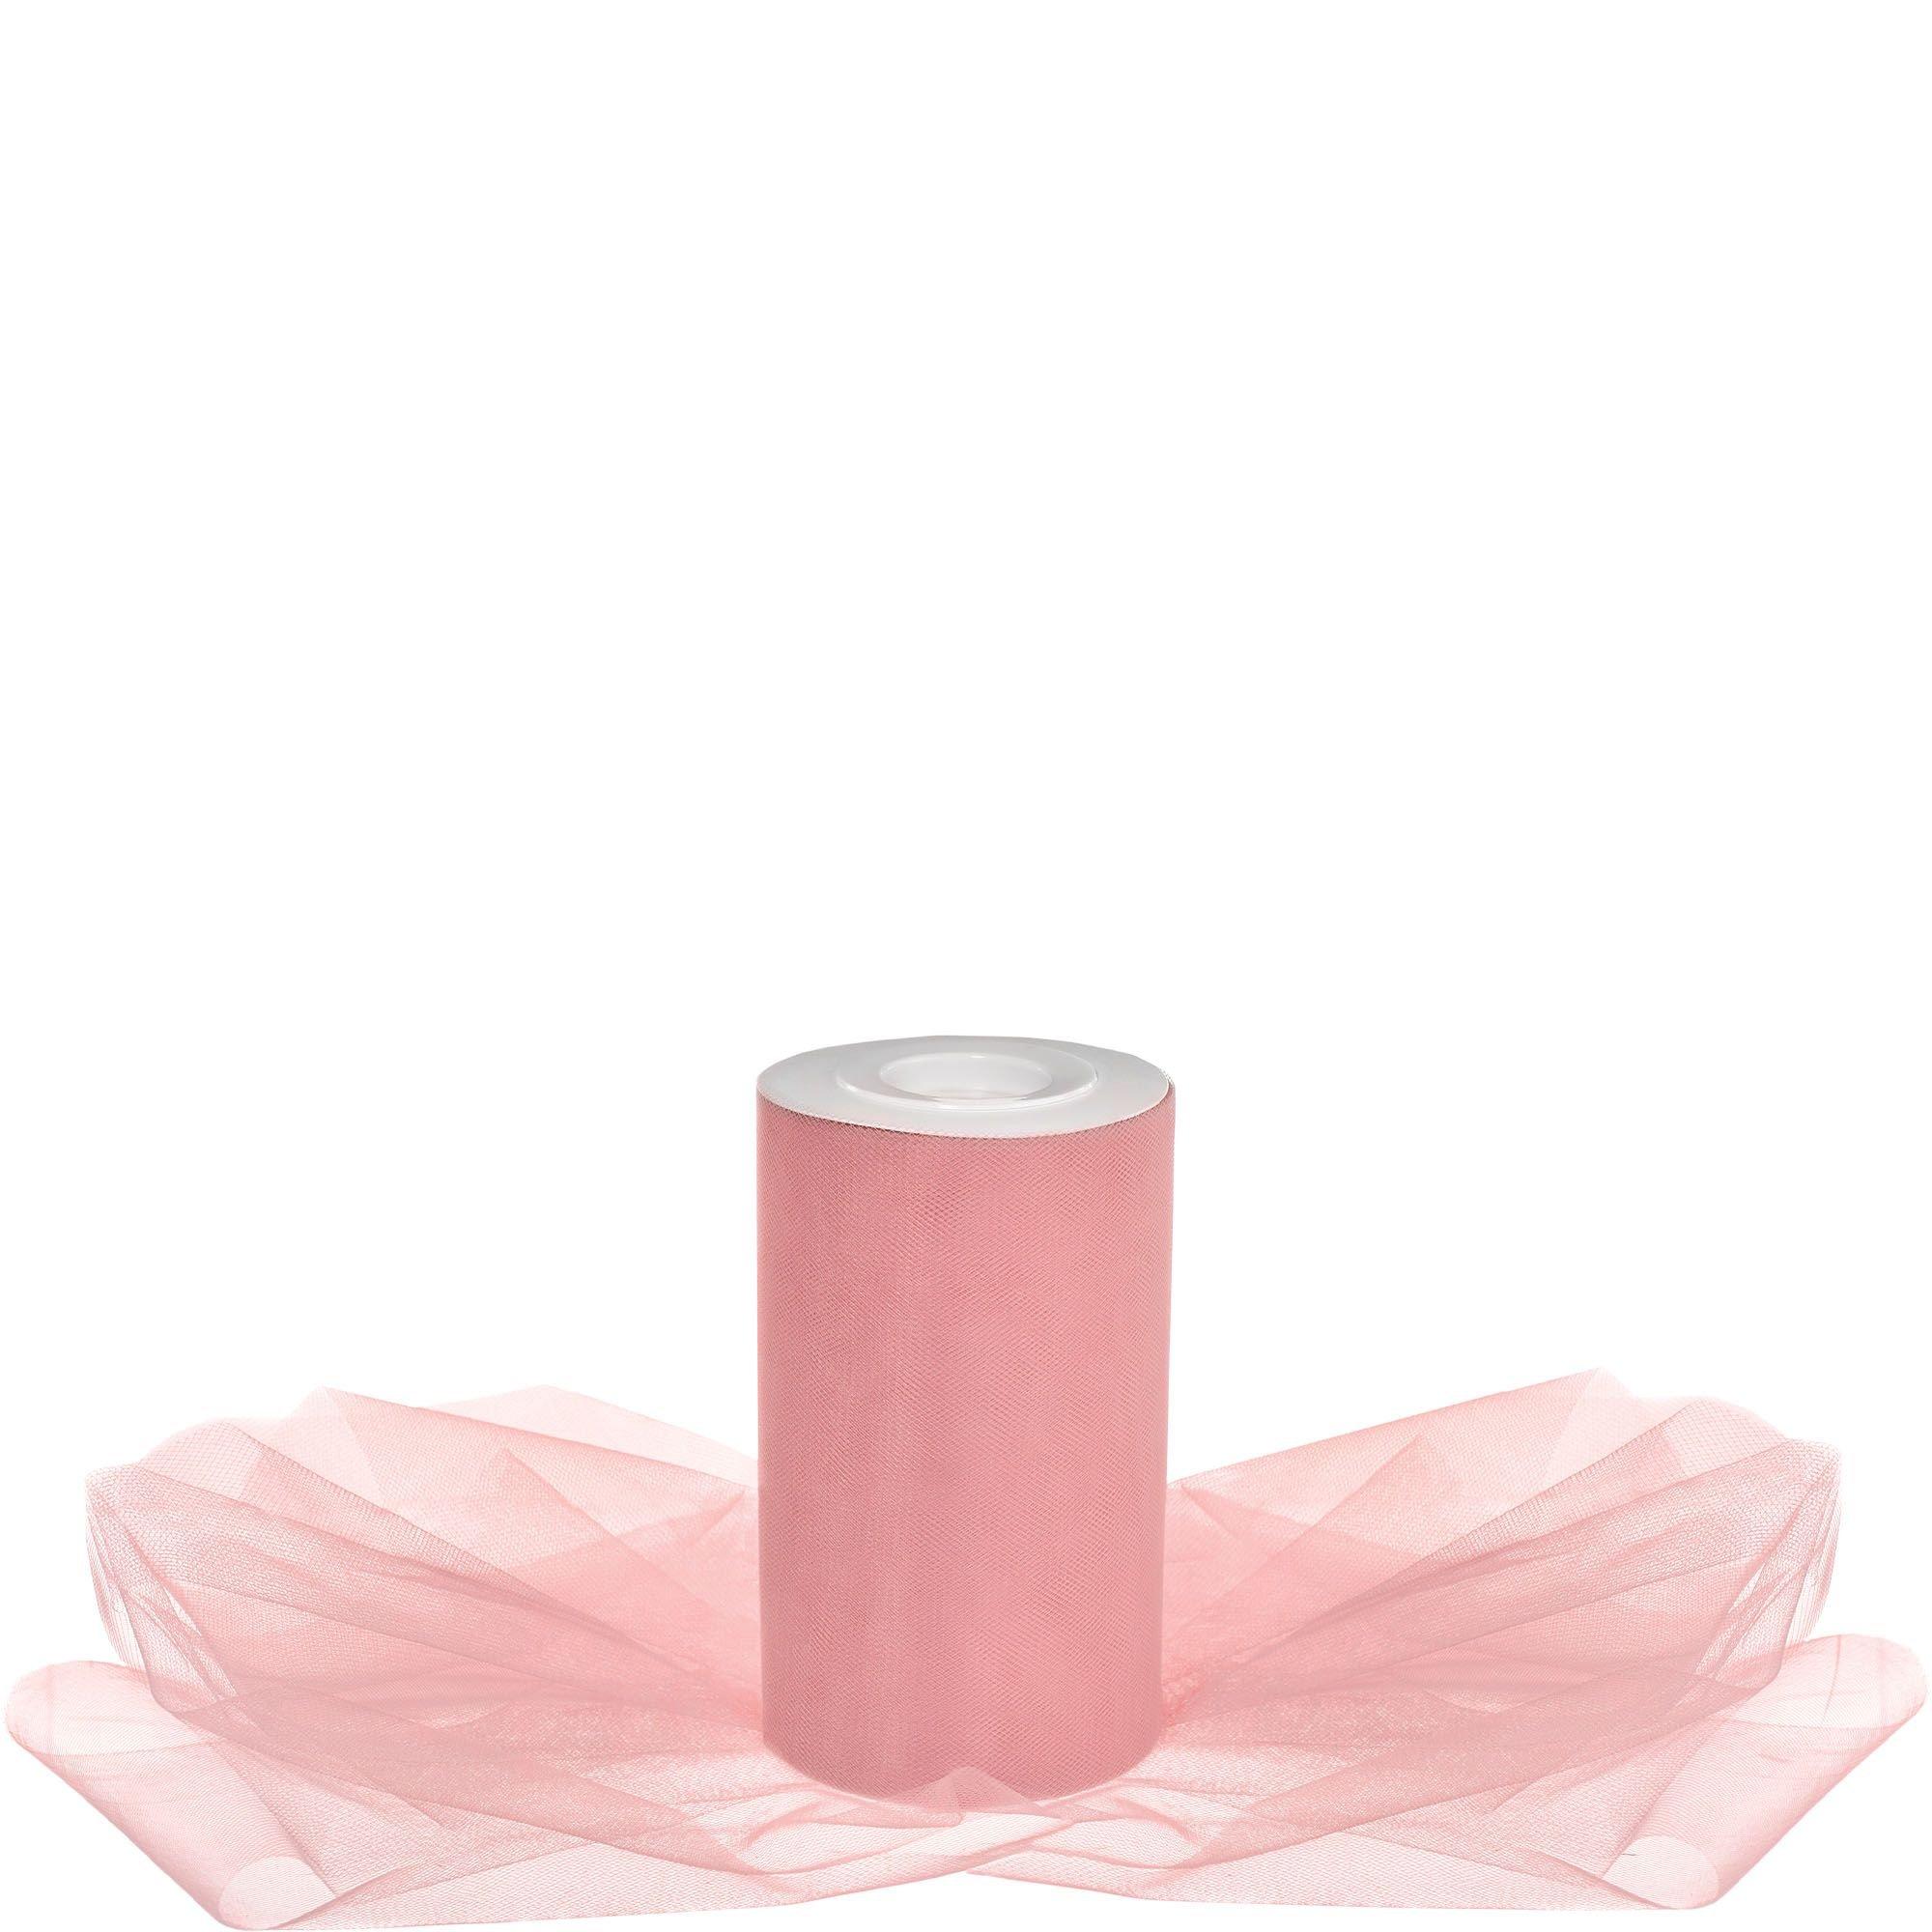 Amscan Pink Blush Tulle Spool 65 Yards x 6”